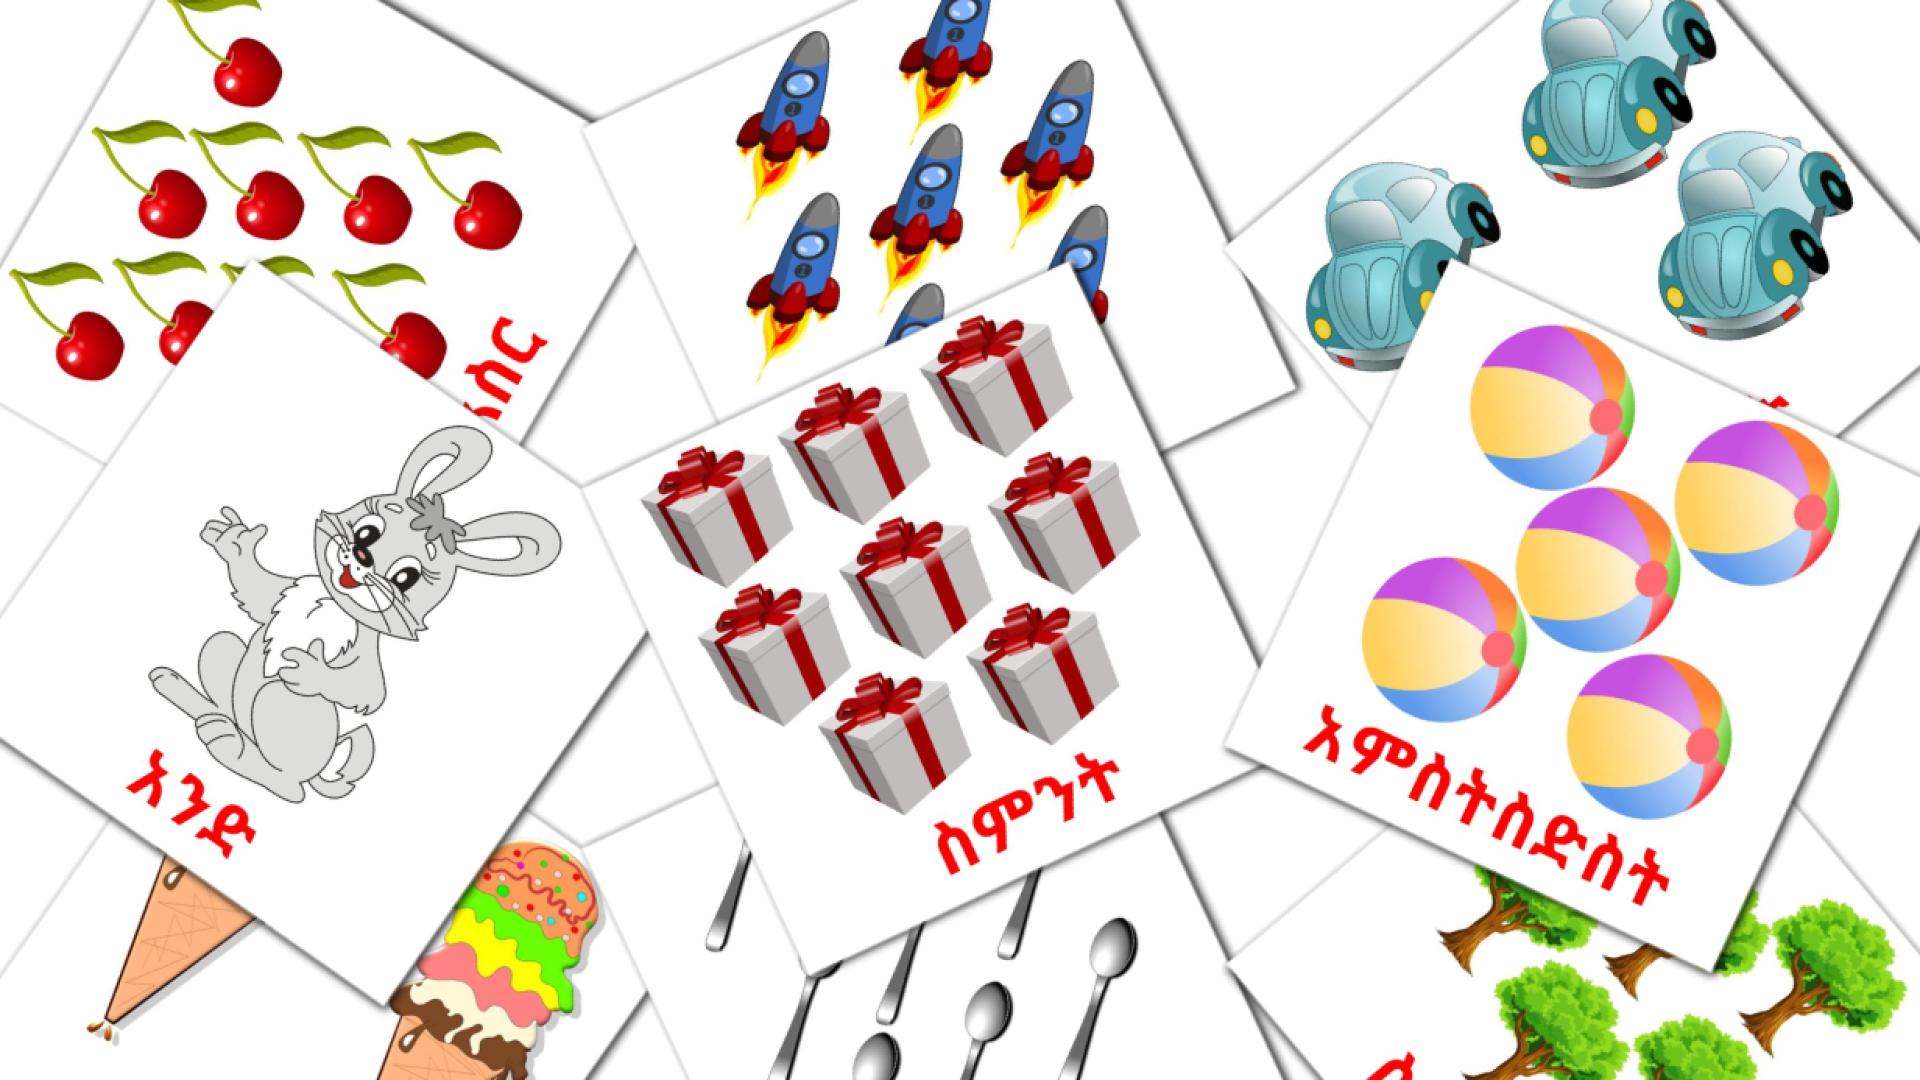 Counting - tarjetas de vocabulario en amharic